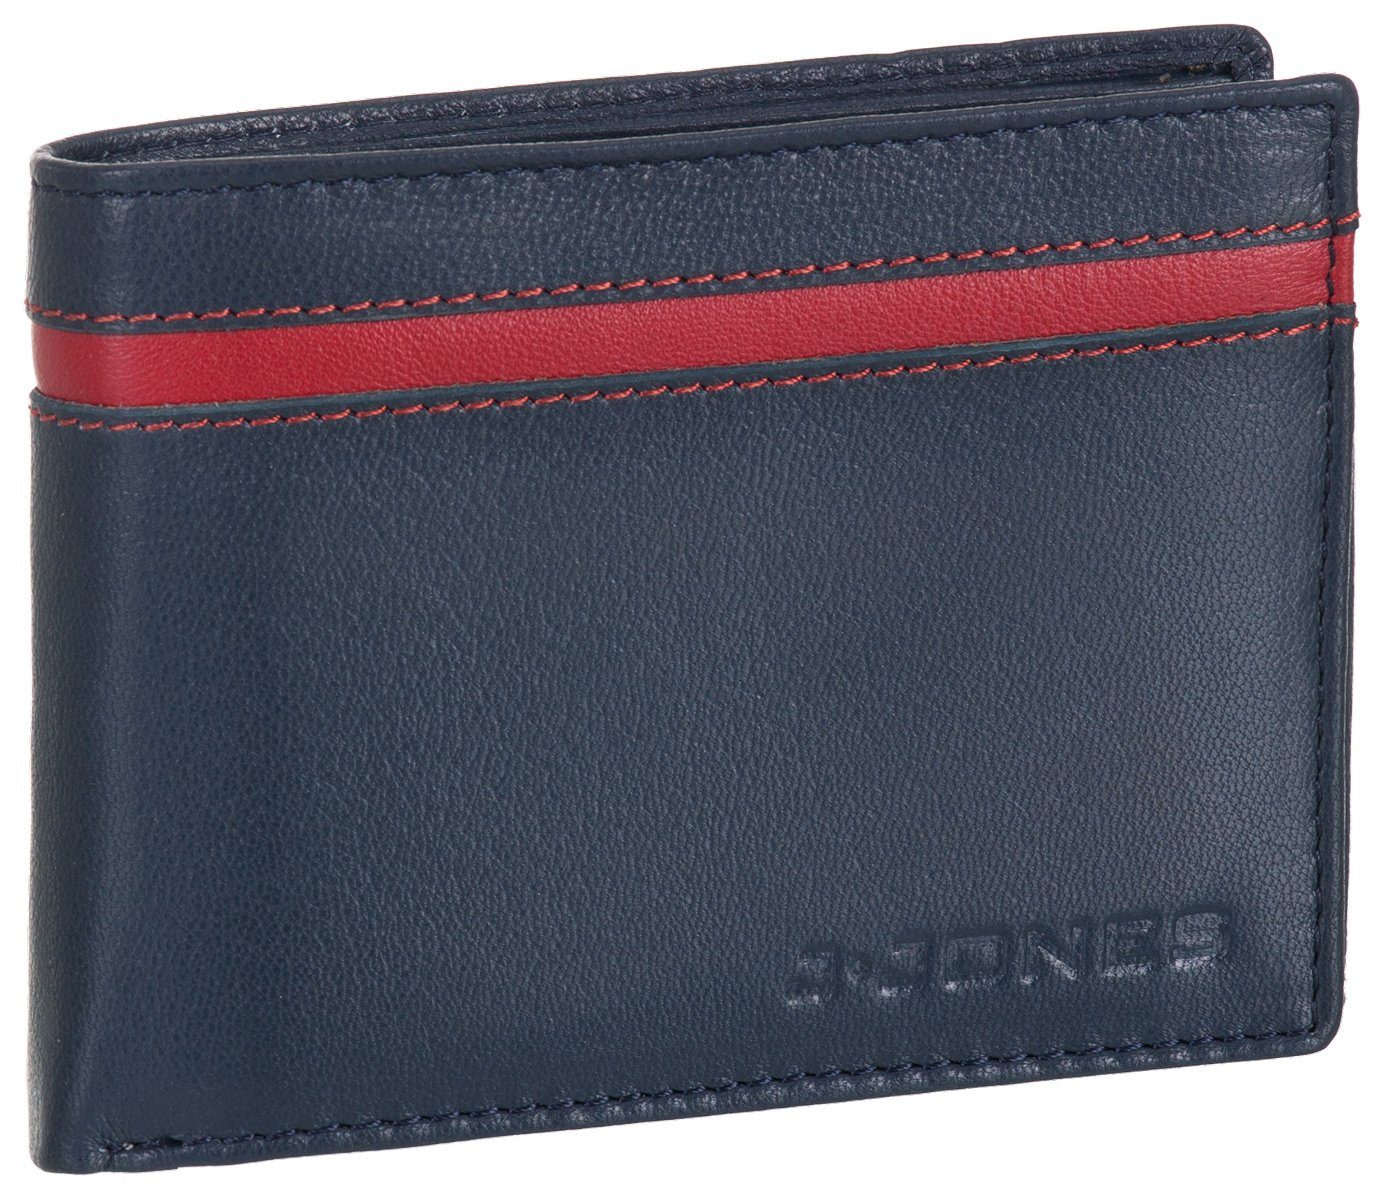 faltbar J.Jones Münzfach Echt Geldbörse, Geldbeutel marineblau Leder Portemonnaie Geldbörse mit RFID-Schutz